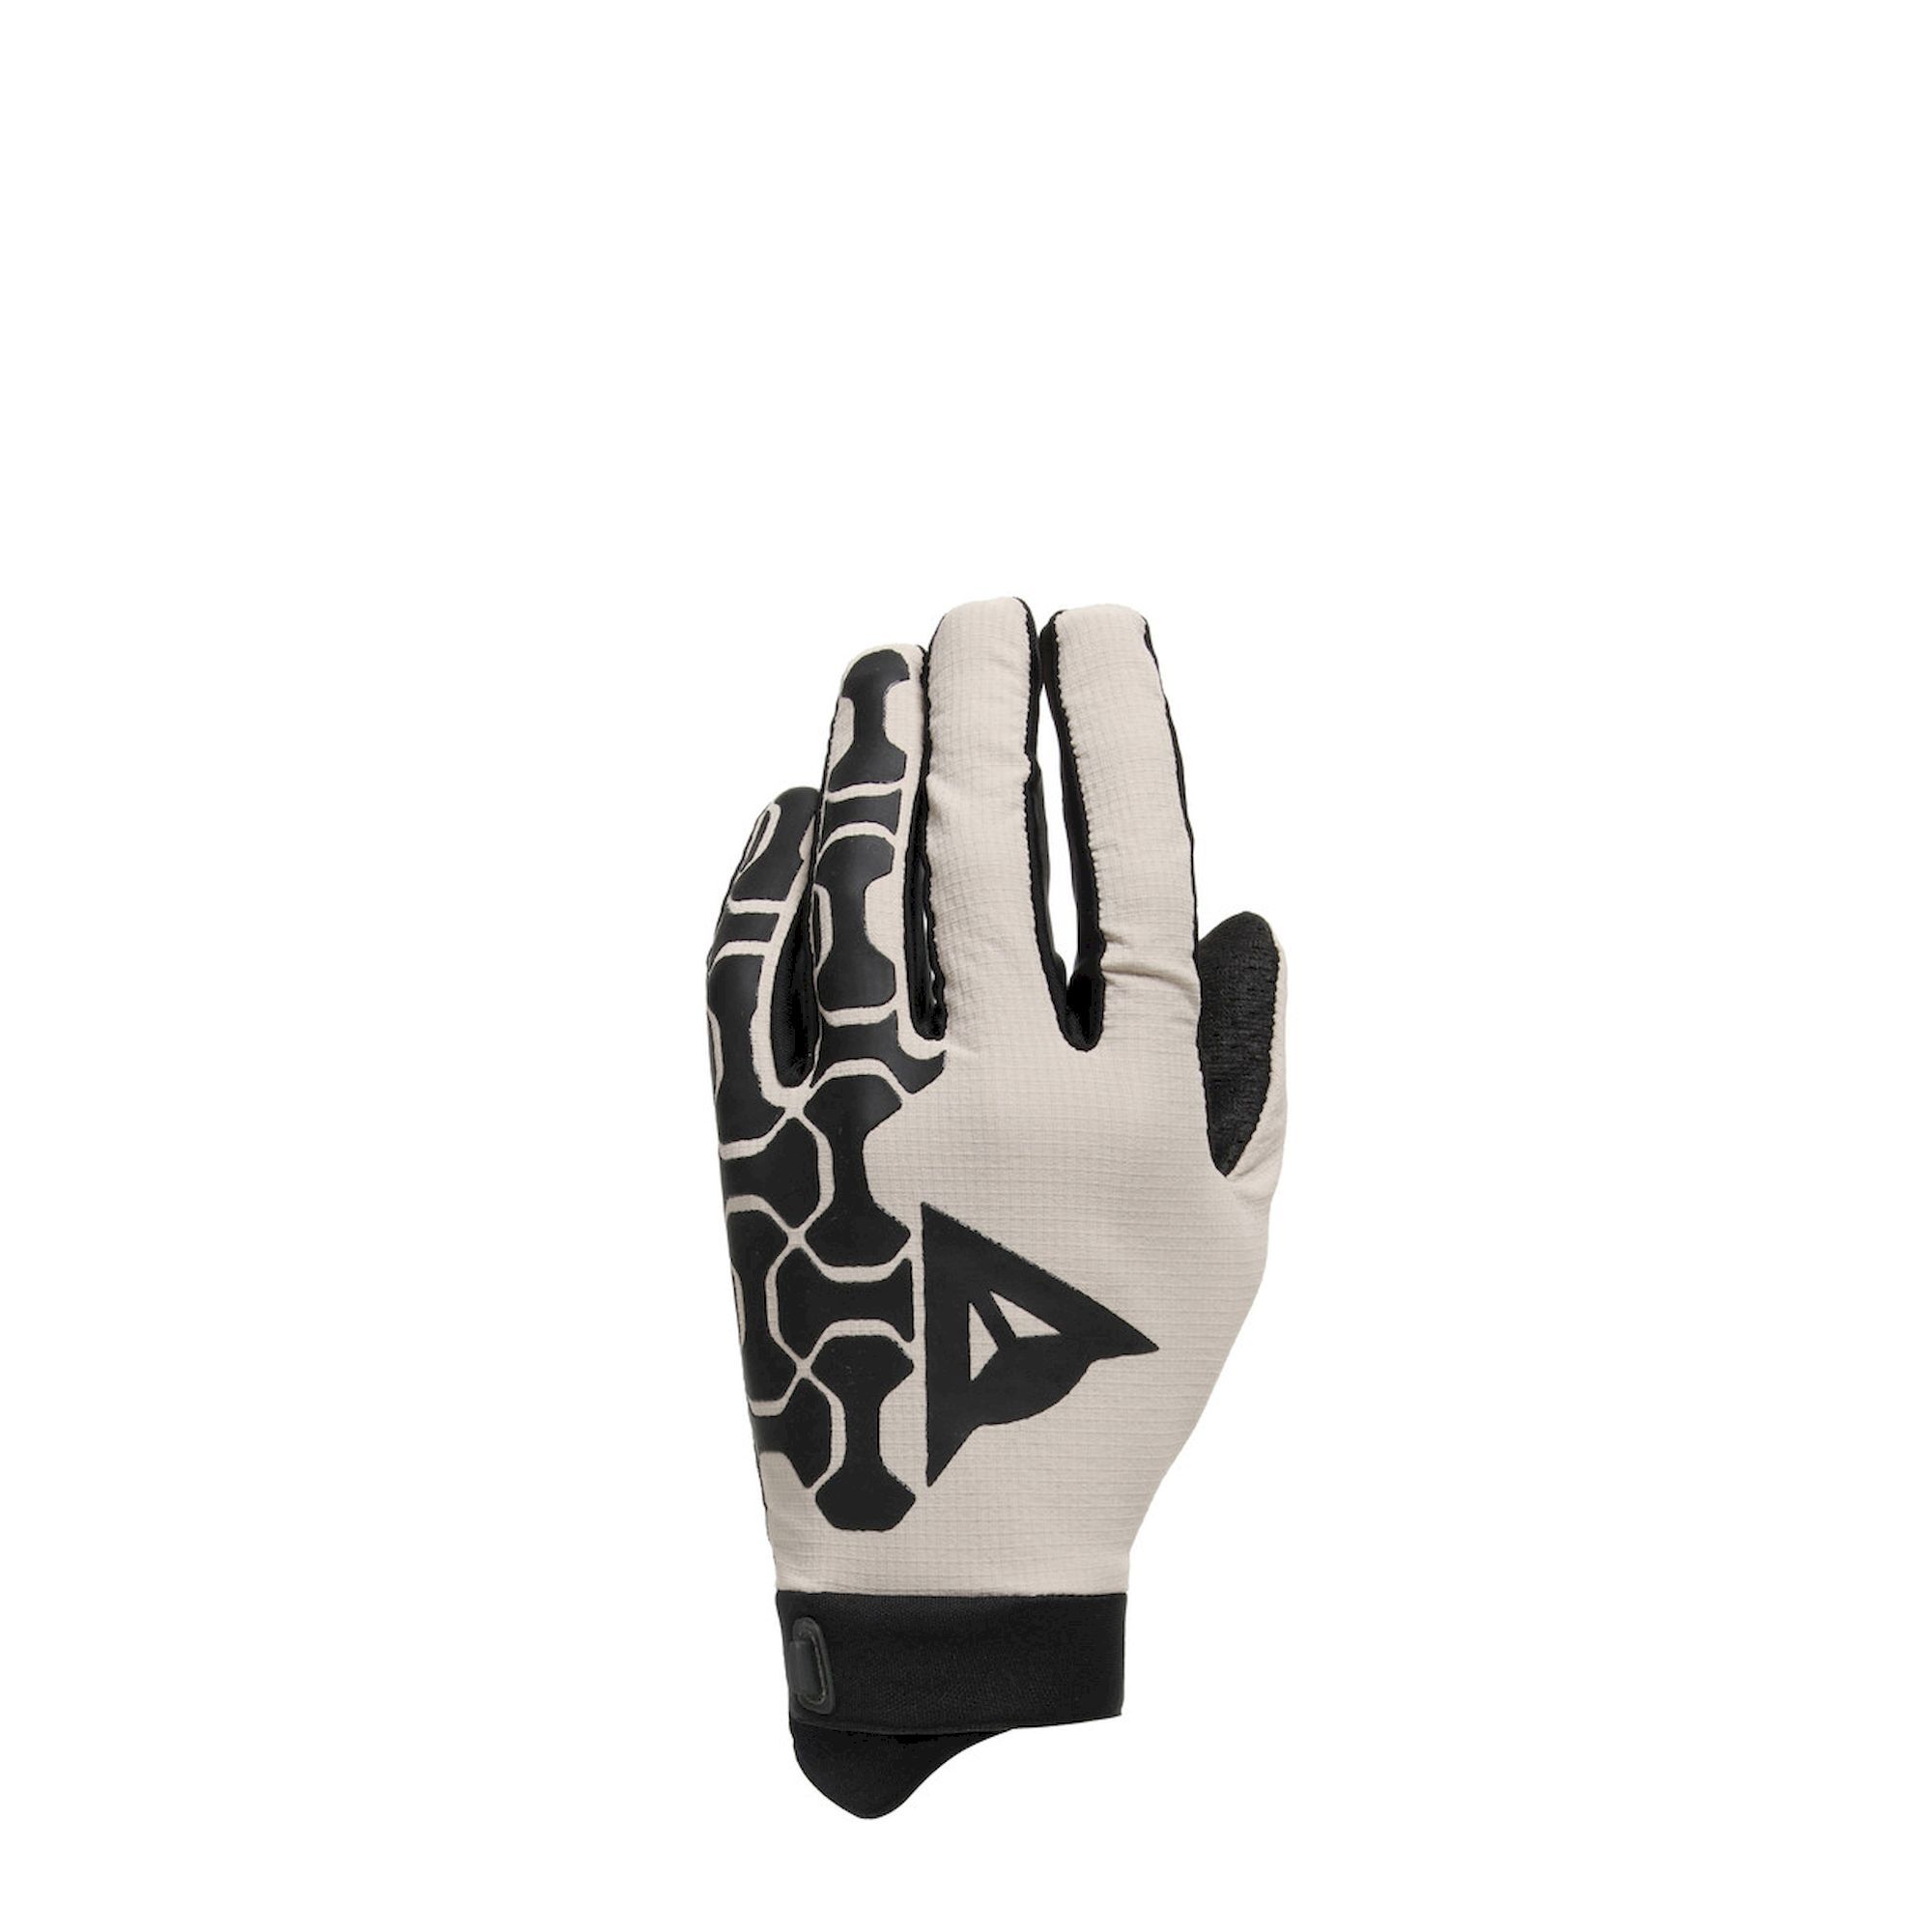 Dainese Hgr - MTB gloves